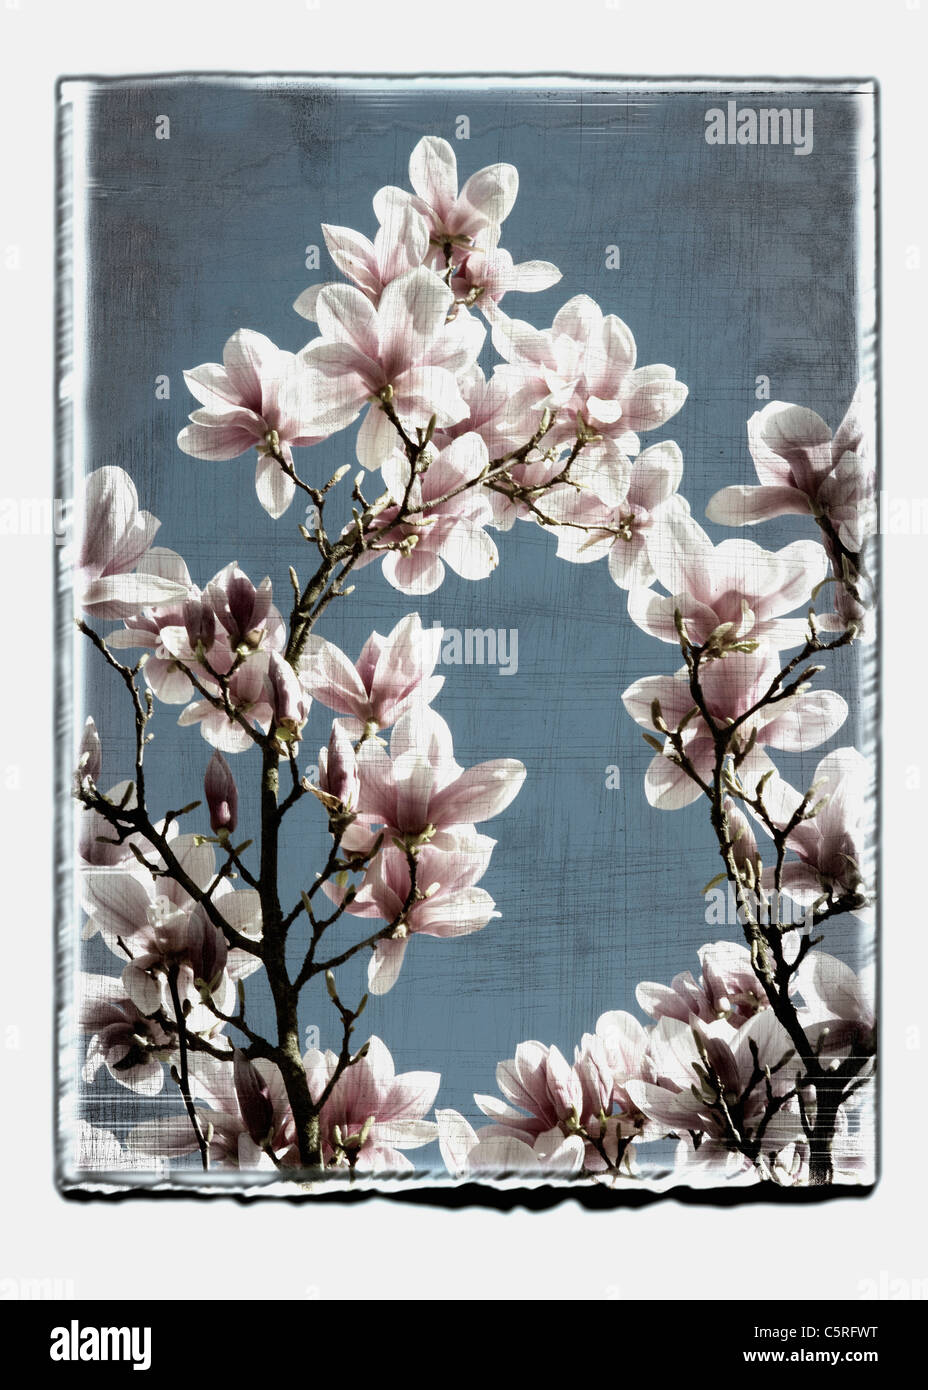 Allemagne, Stuttgart, Magnolia fleurs sur tree against sky Banque D'Images